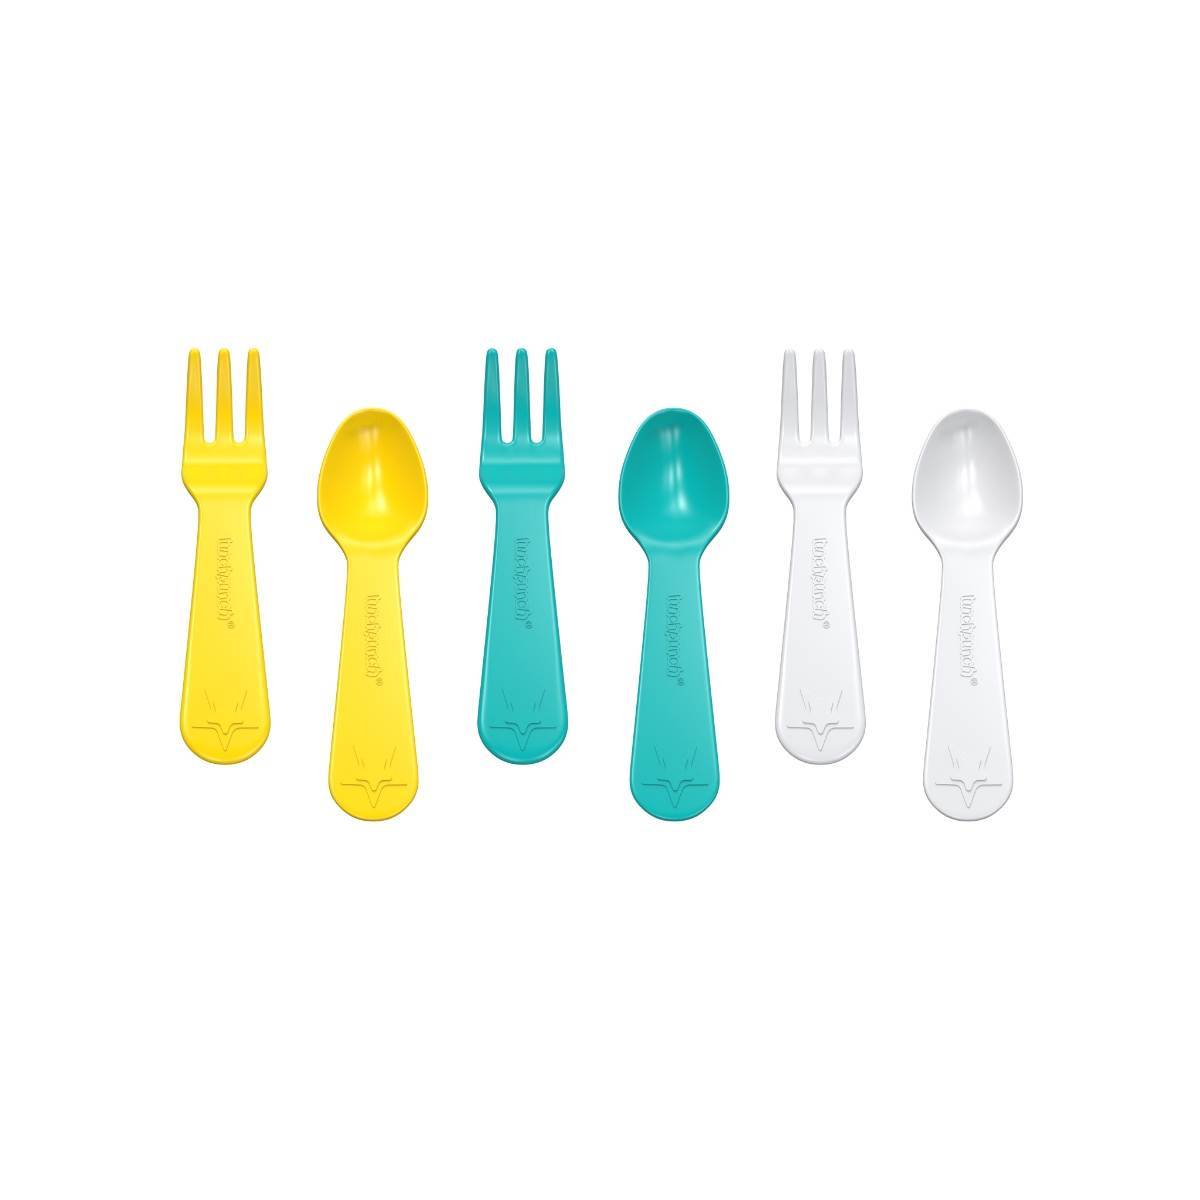 Bento Fork & Spoon Set (Yellow)